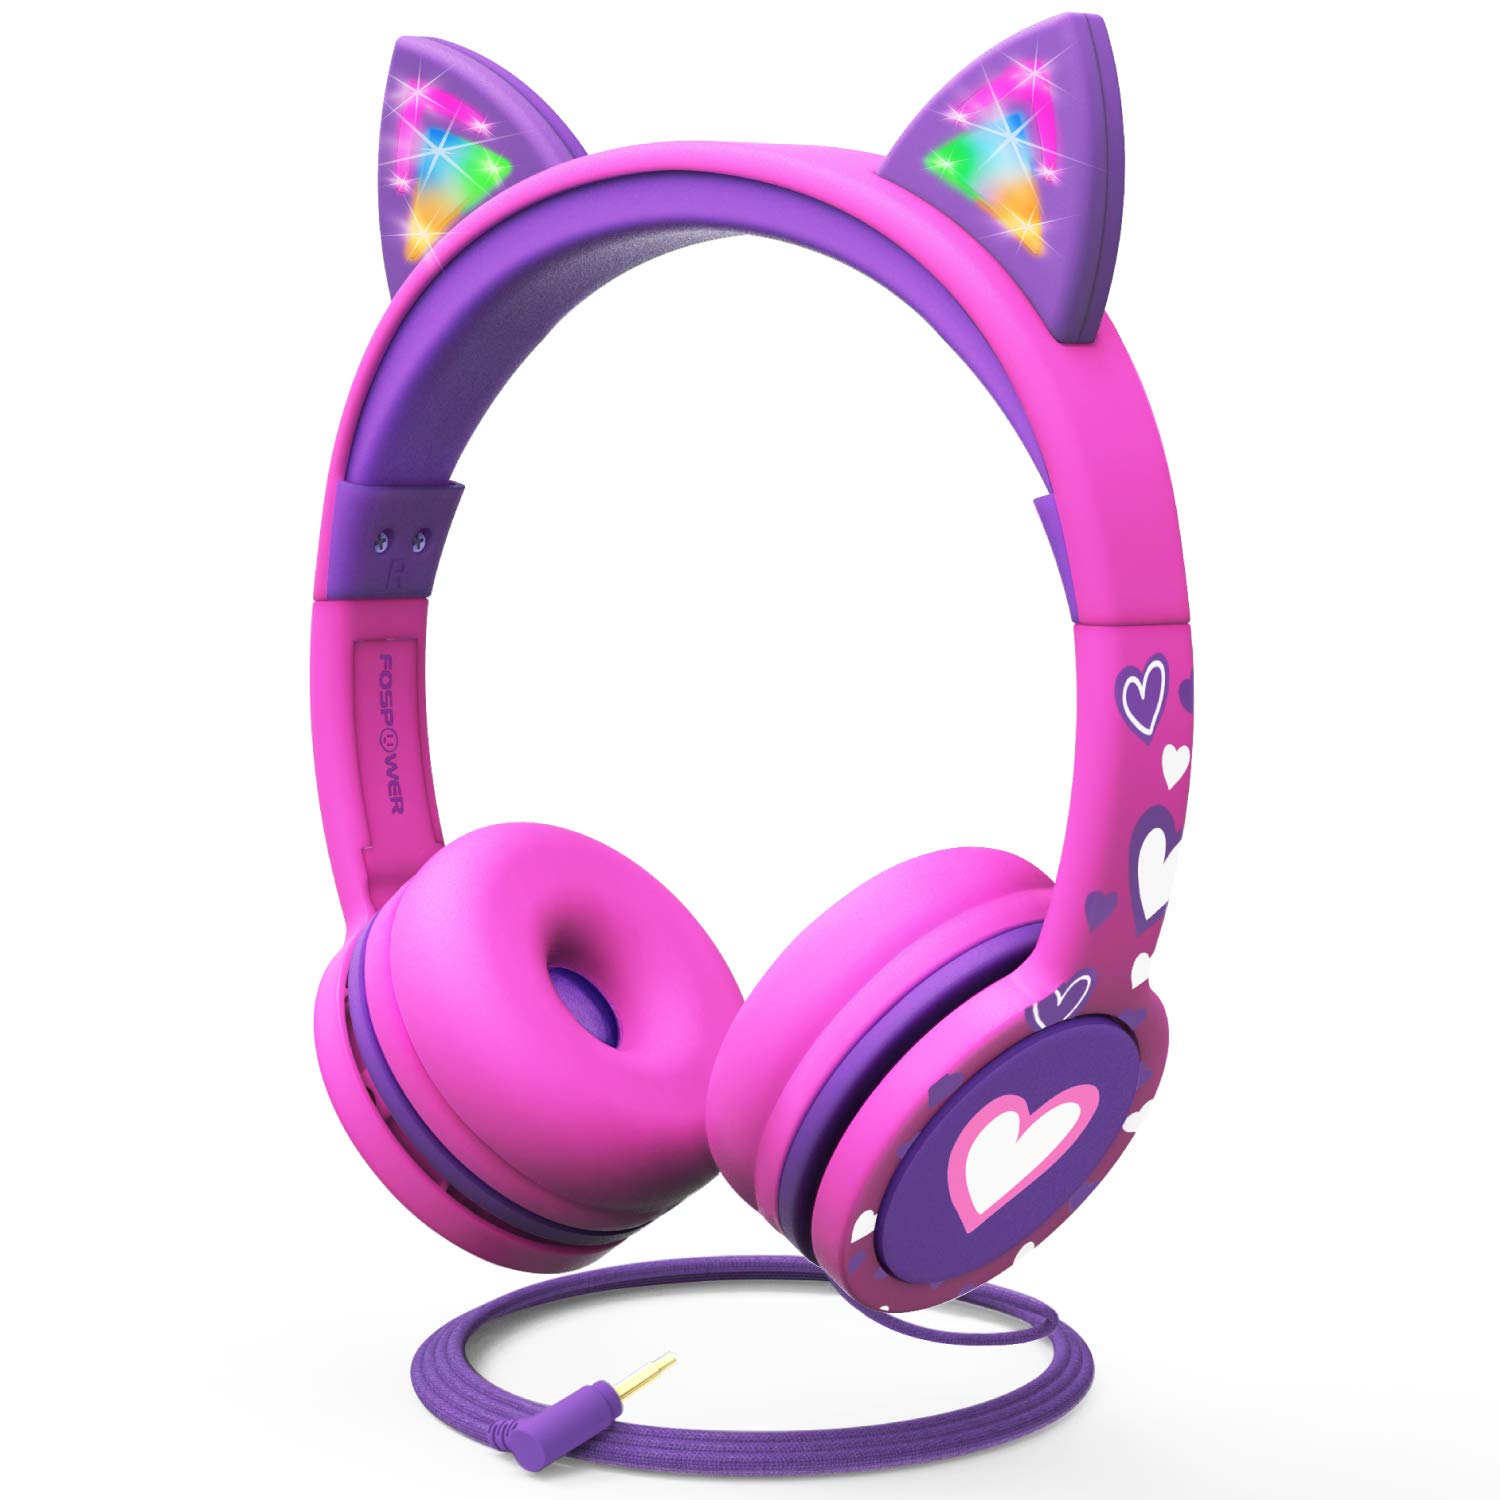  FosPower سماعات رأس للأطفال مزودة بإضاءة LED لأذن القط 3.5 ملم على الأذن سماعات صوت للأطفال مزودة بكابل خالٍ من التشابك...